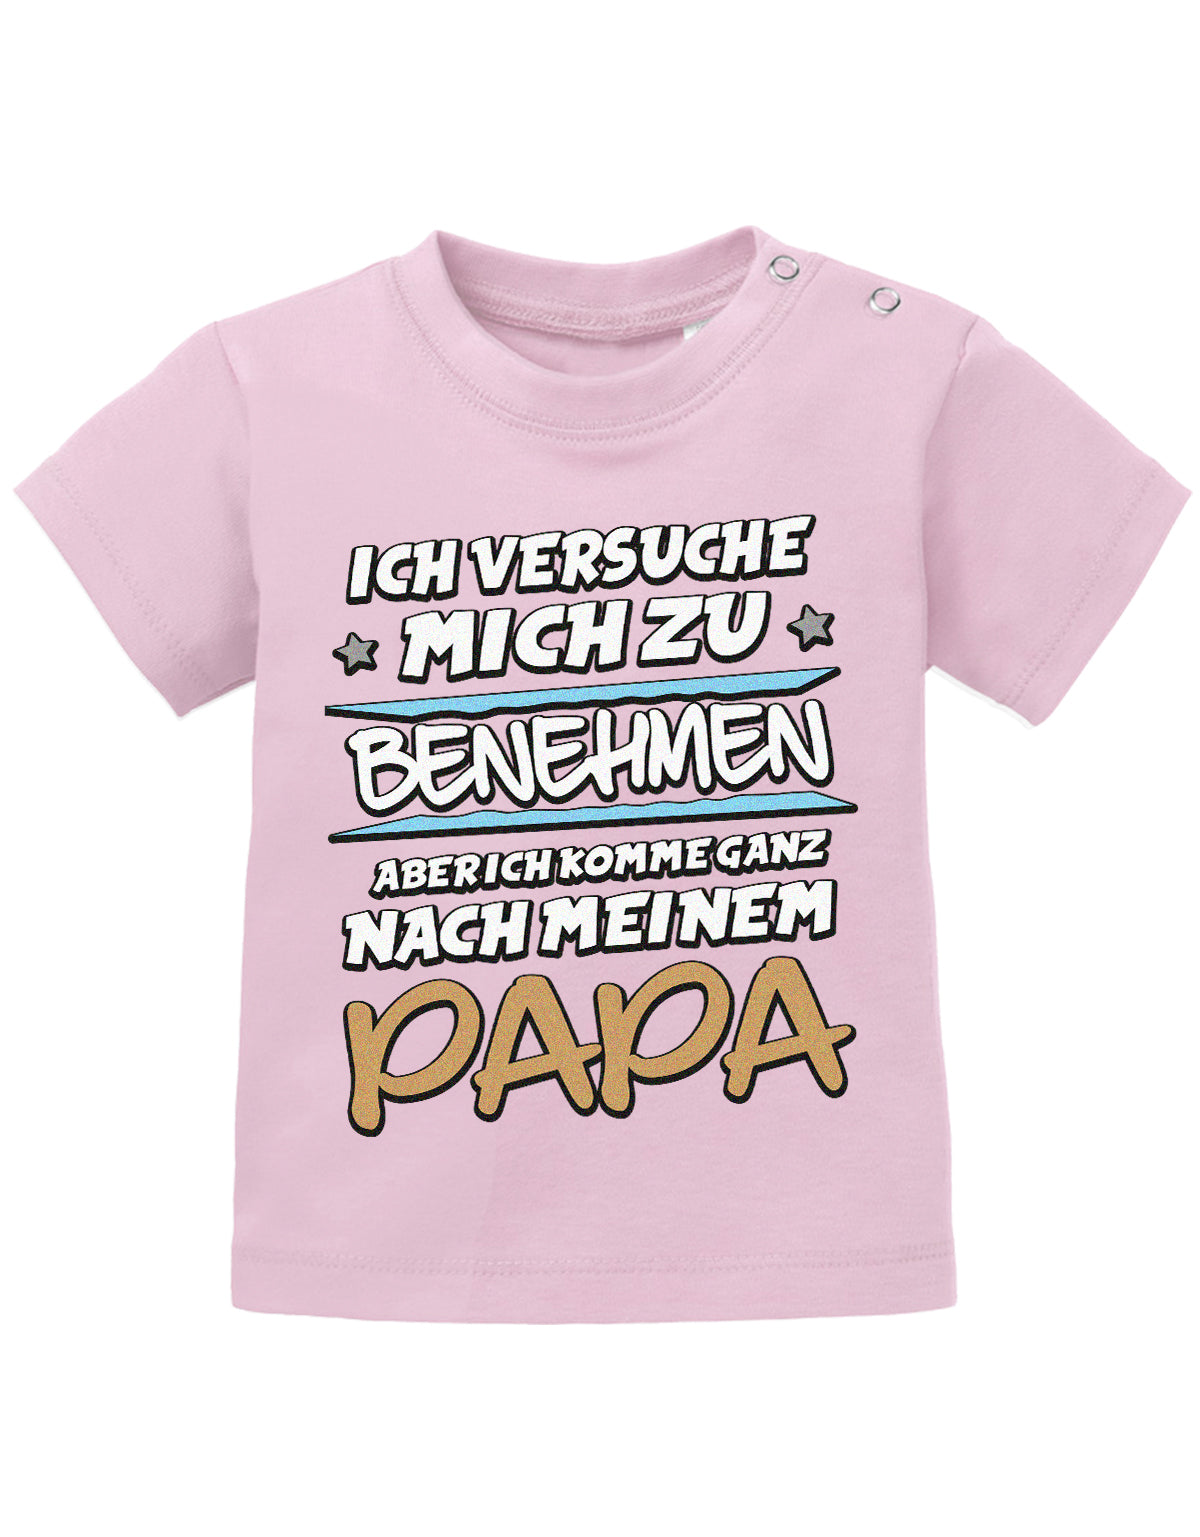 Papa Spruch Baby Shirt. Ich versuche mich zu benehmen, aber ich komme ganz nach meinem Papa. Rosa